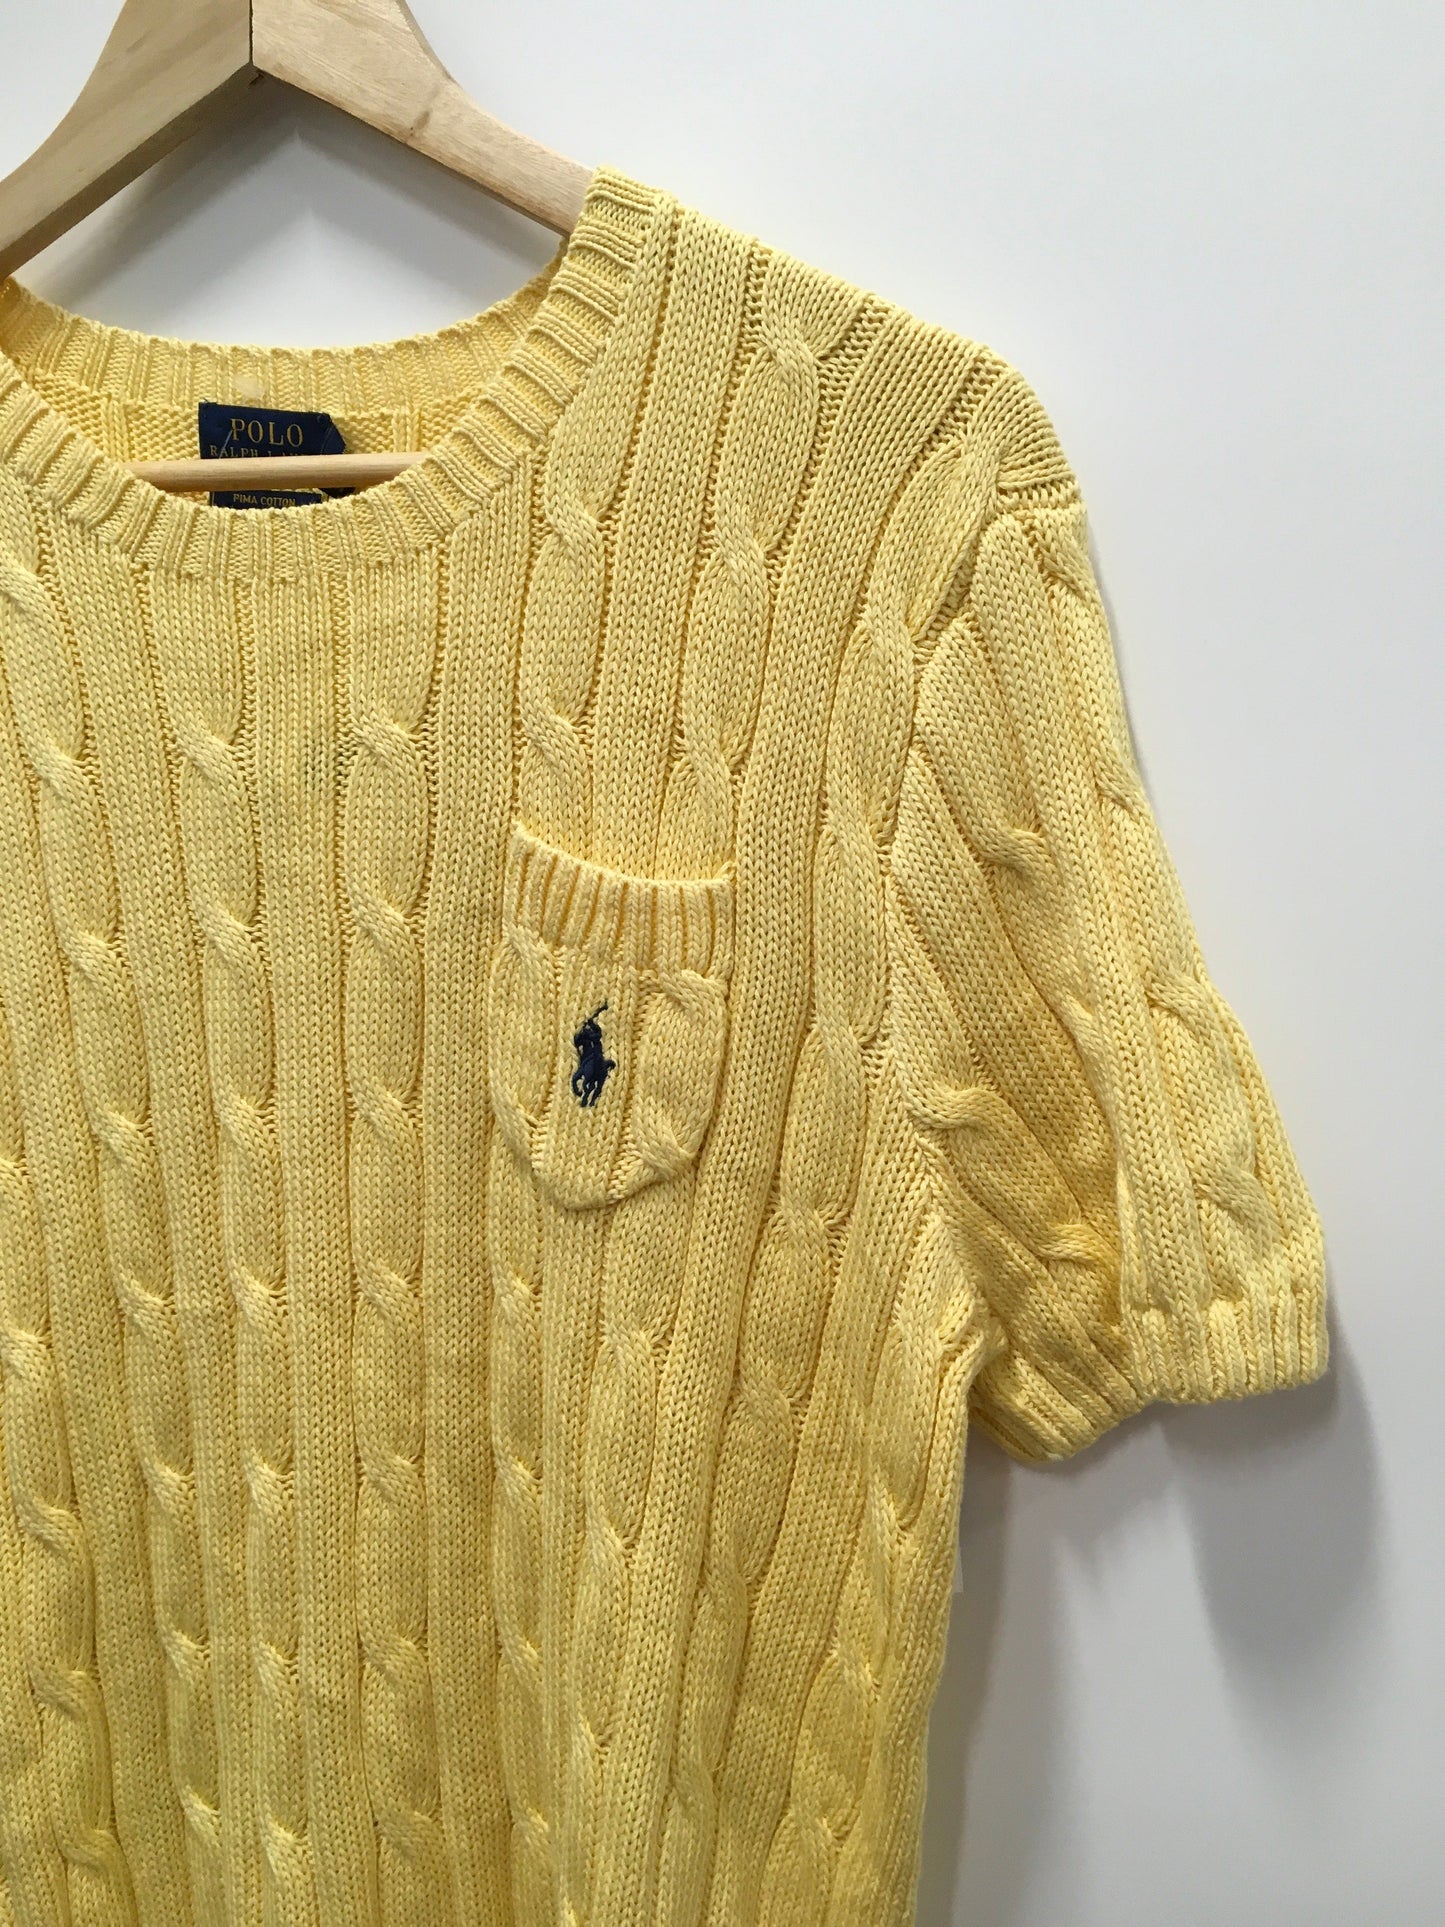 Yellow Sweater Short Sleeve Polo Ralph Lauren, Size Xl